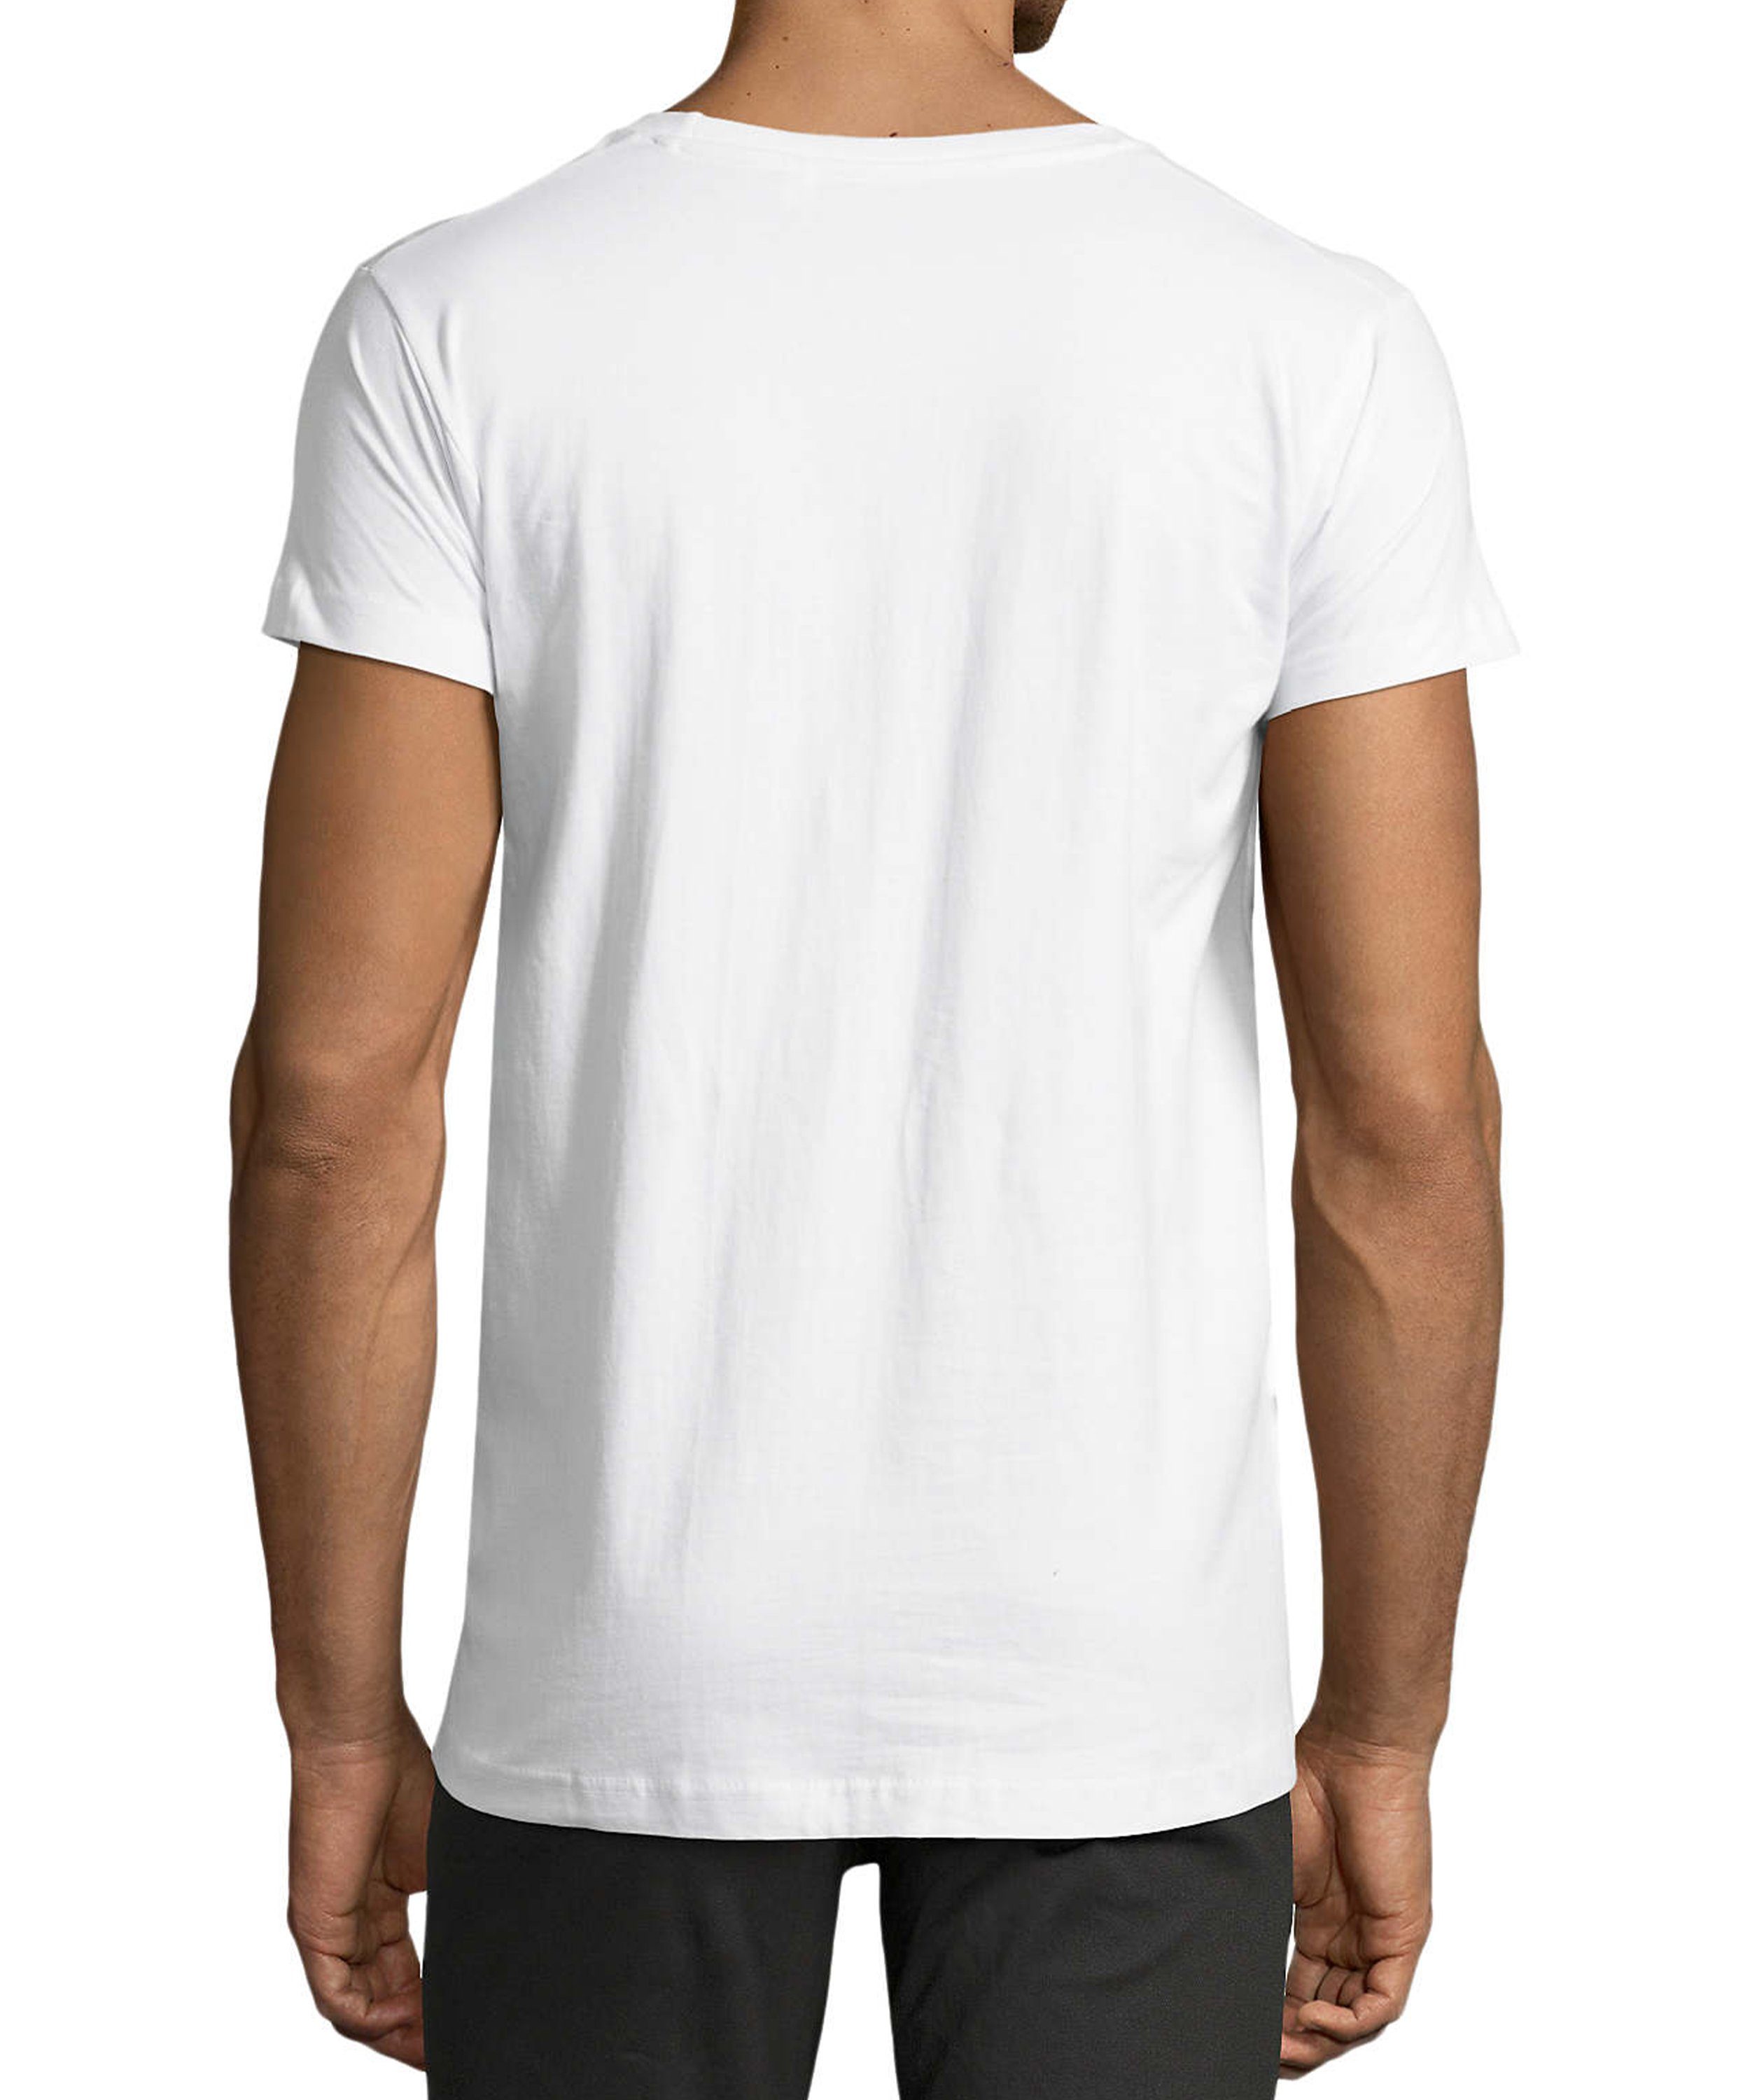 mit Print weiss MyDesign24 - Trinkshirt Baumwollshirt Mann trinkenden Fit, Regular Herren zum Aufdruck bis T-Shirt i312 Evolution Fun Shirt